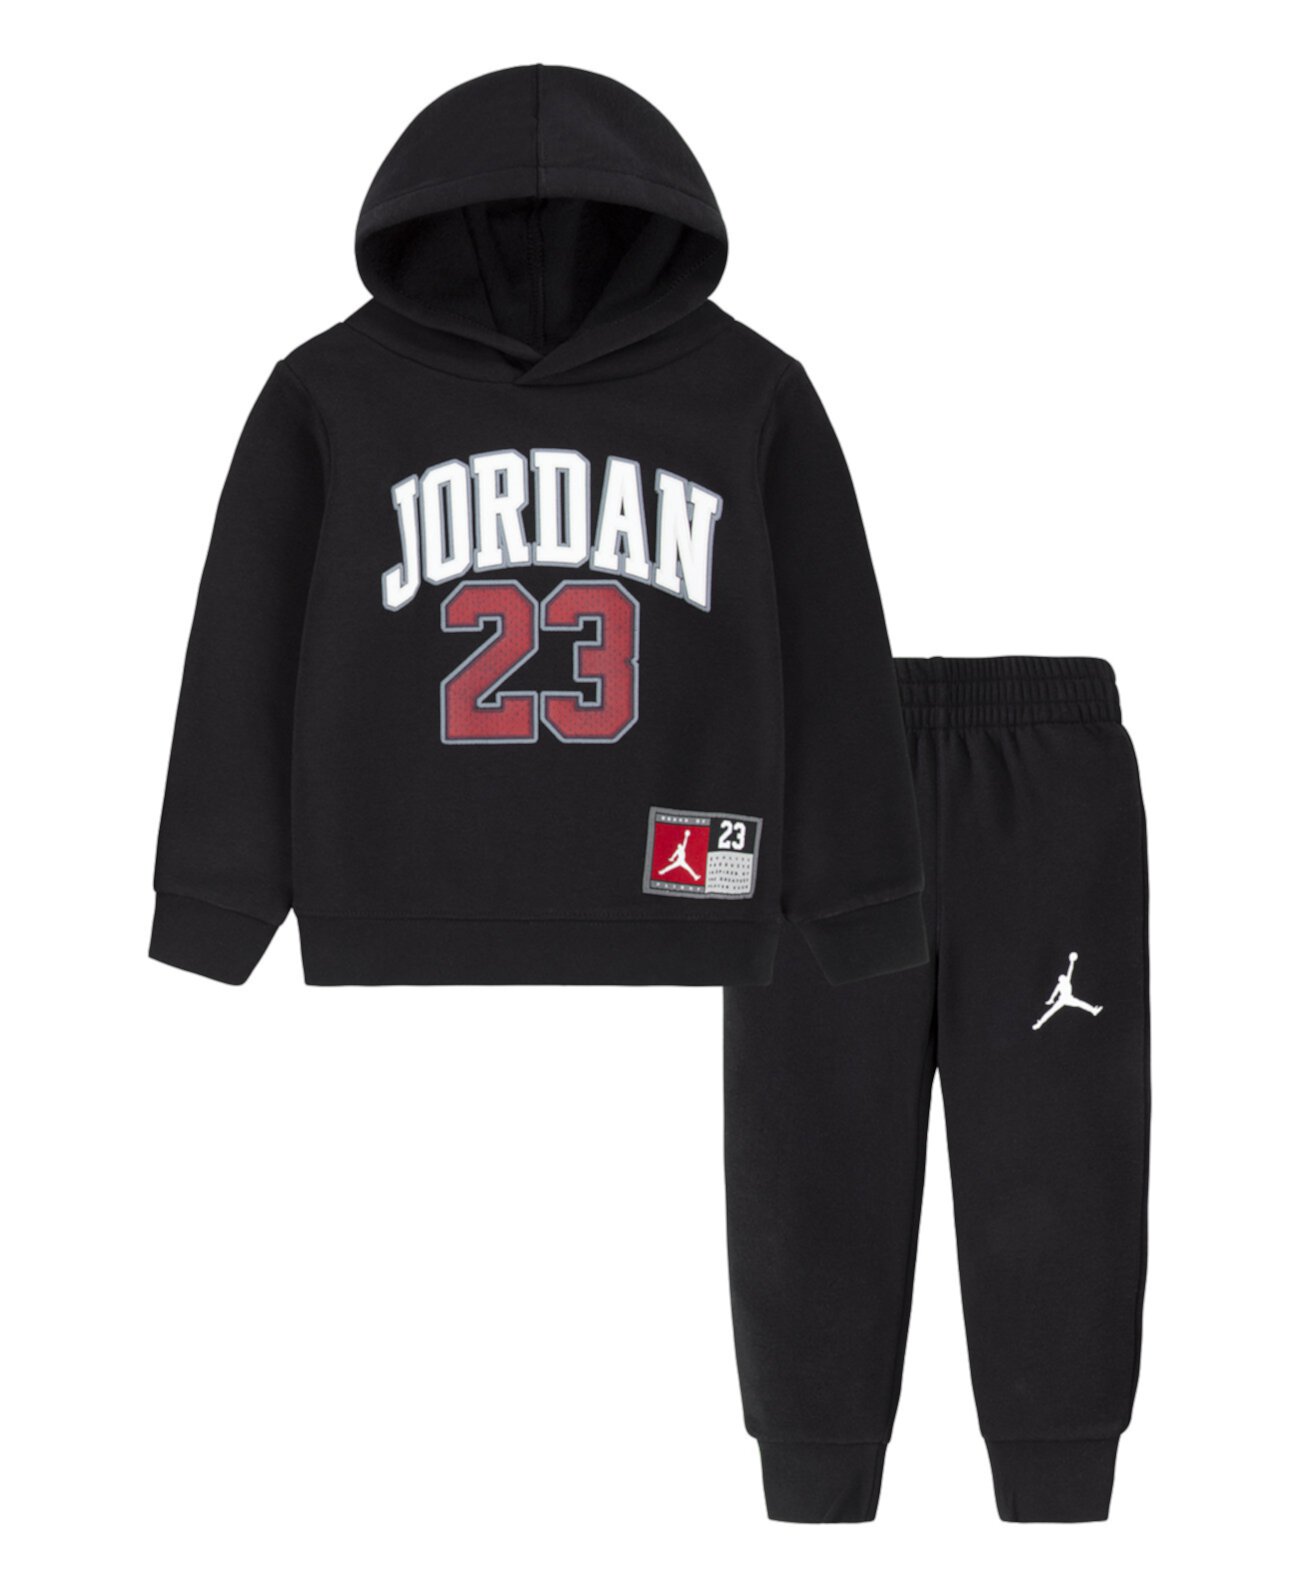 Комплект из джерси для мальчиков: пуловер, худи и брюки-джоггеры Jordan